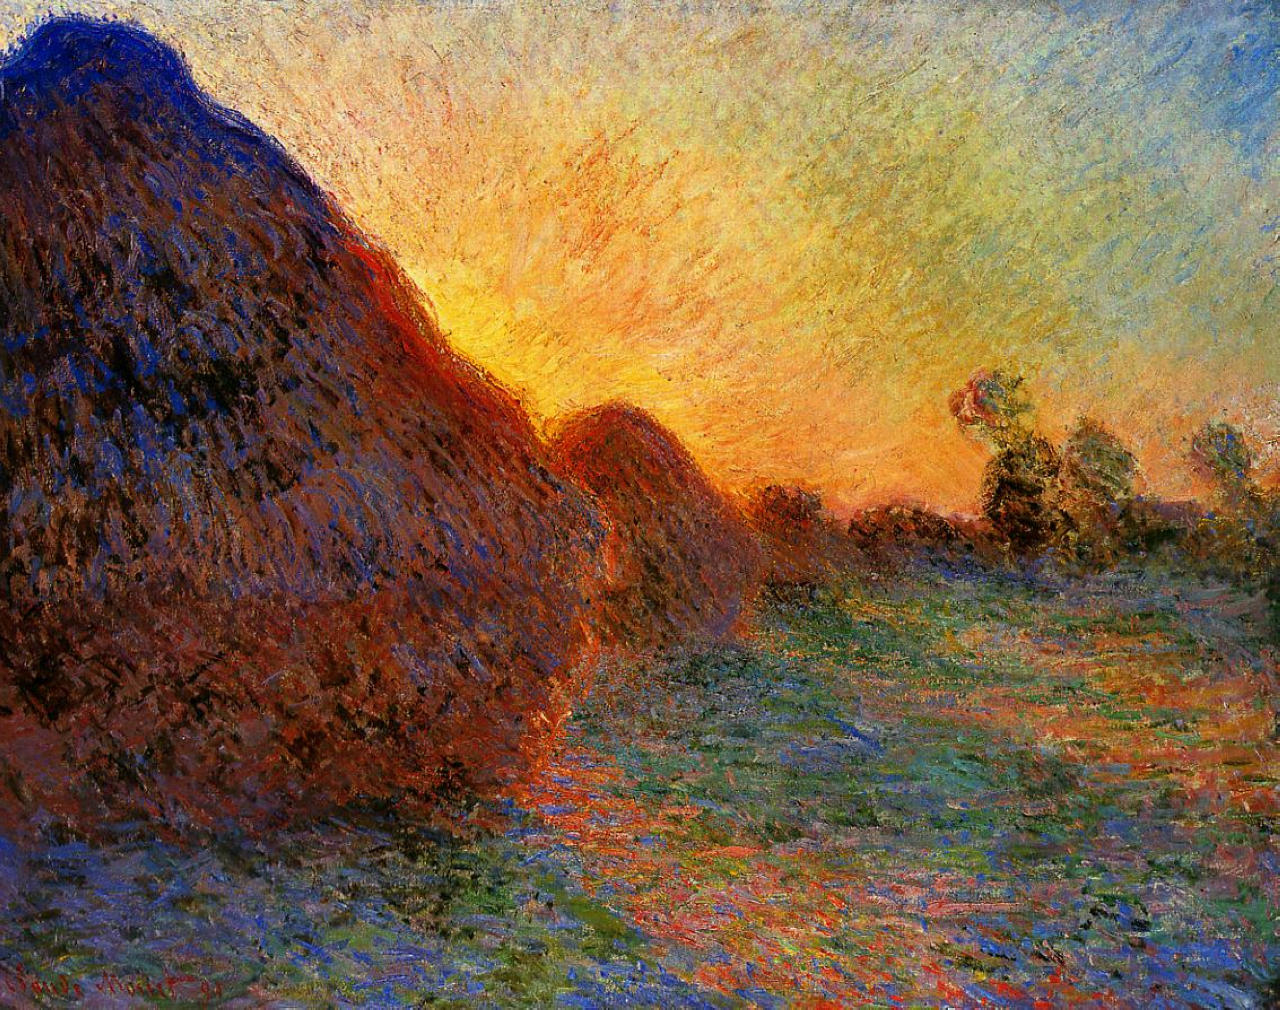 La obra "Les Meules" (Los Almiares) de Claude Monet. El cuadro pasó a la colección Hasso Plattner del Museo Barberini en 2019 tras ser adquirido por 110,7 millones de dólares en una subasta de Sotheby's. (Wikipedia)